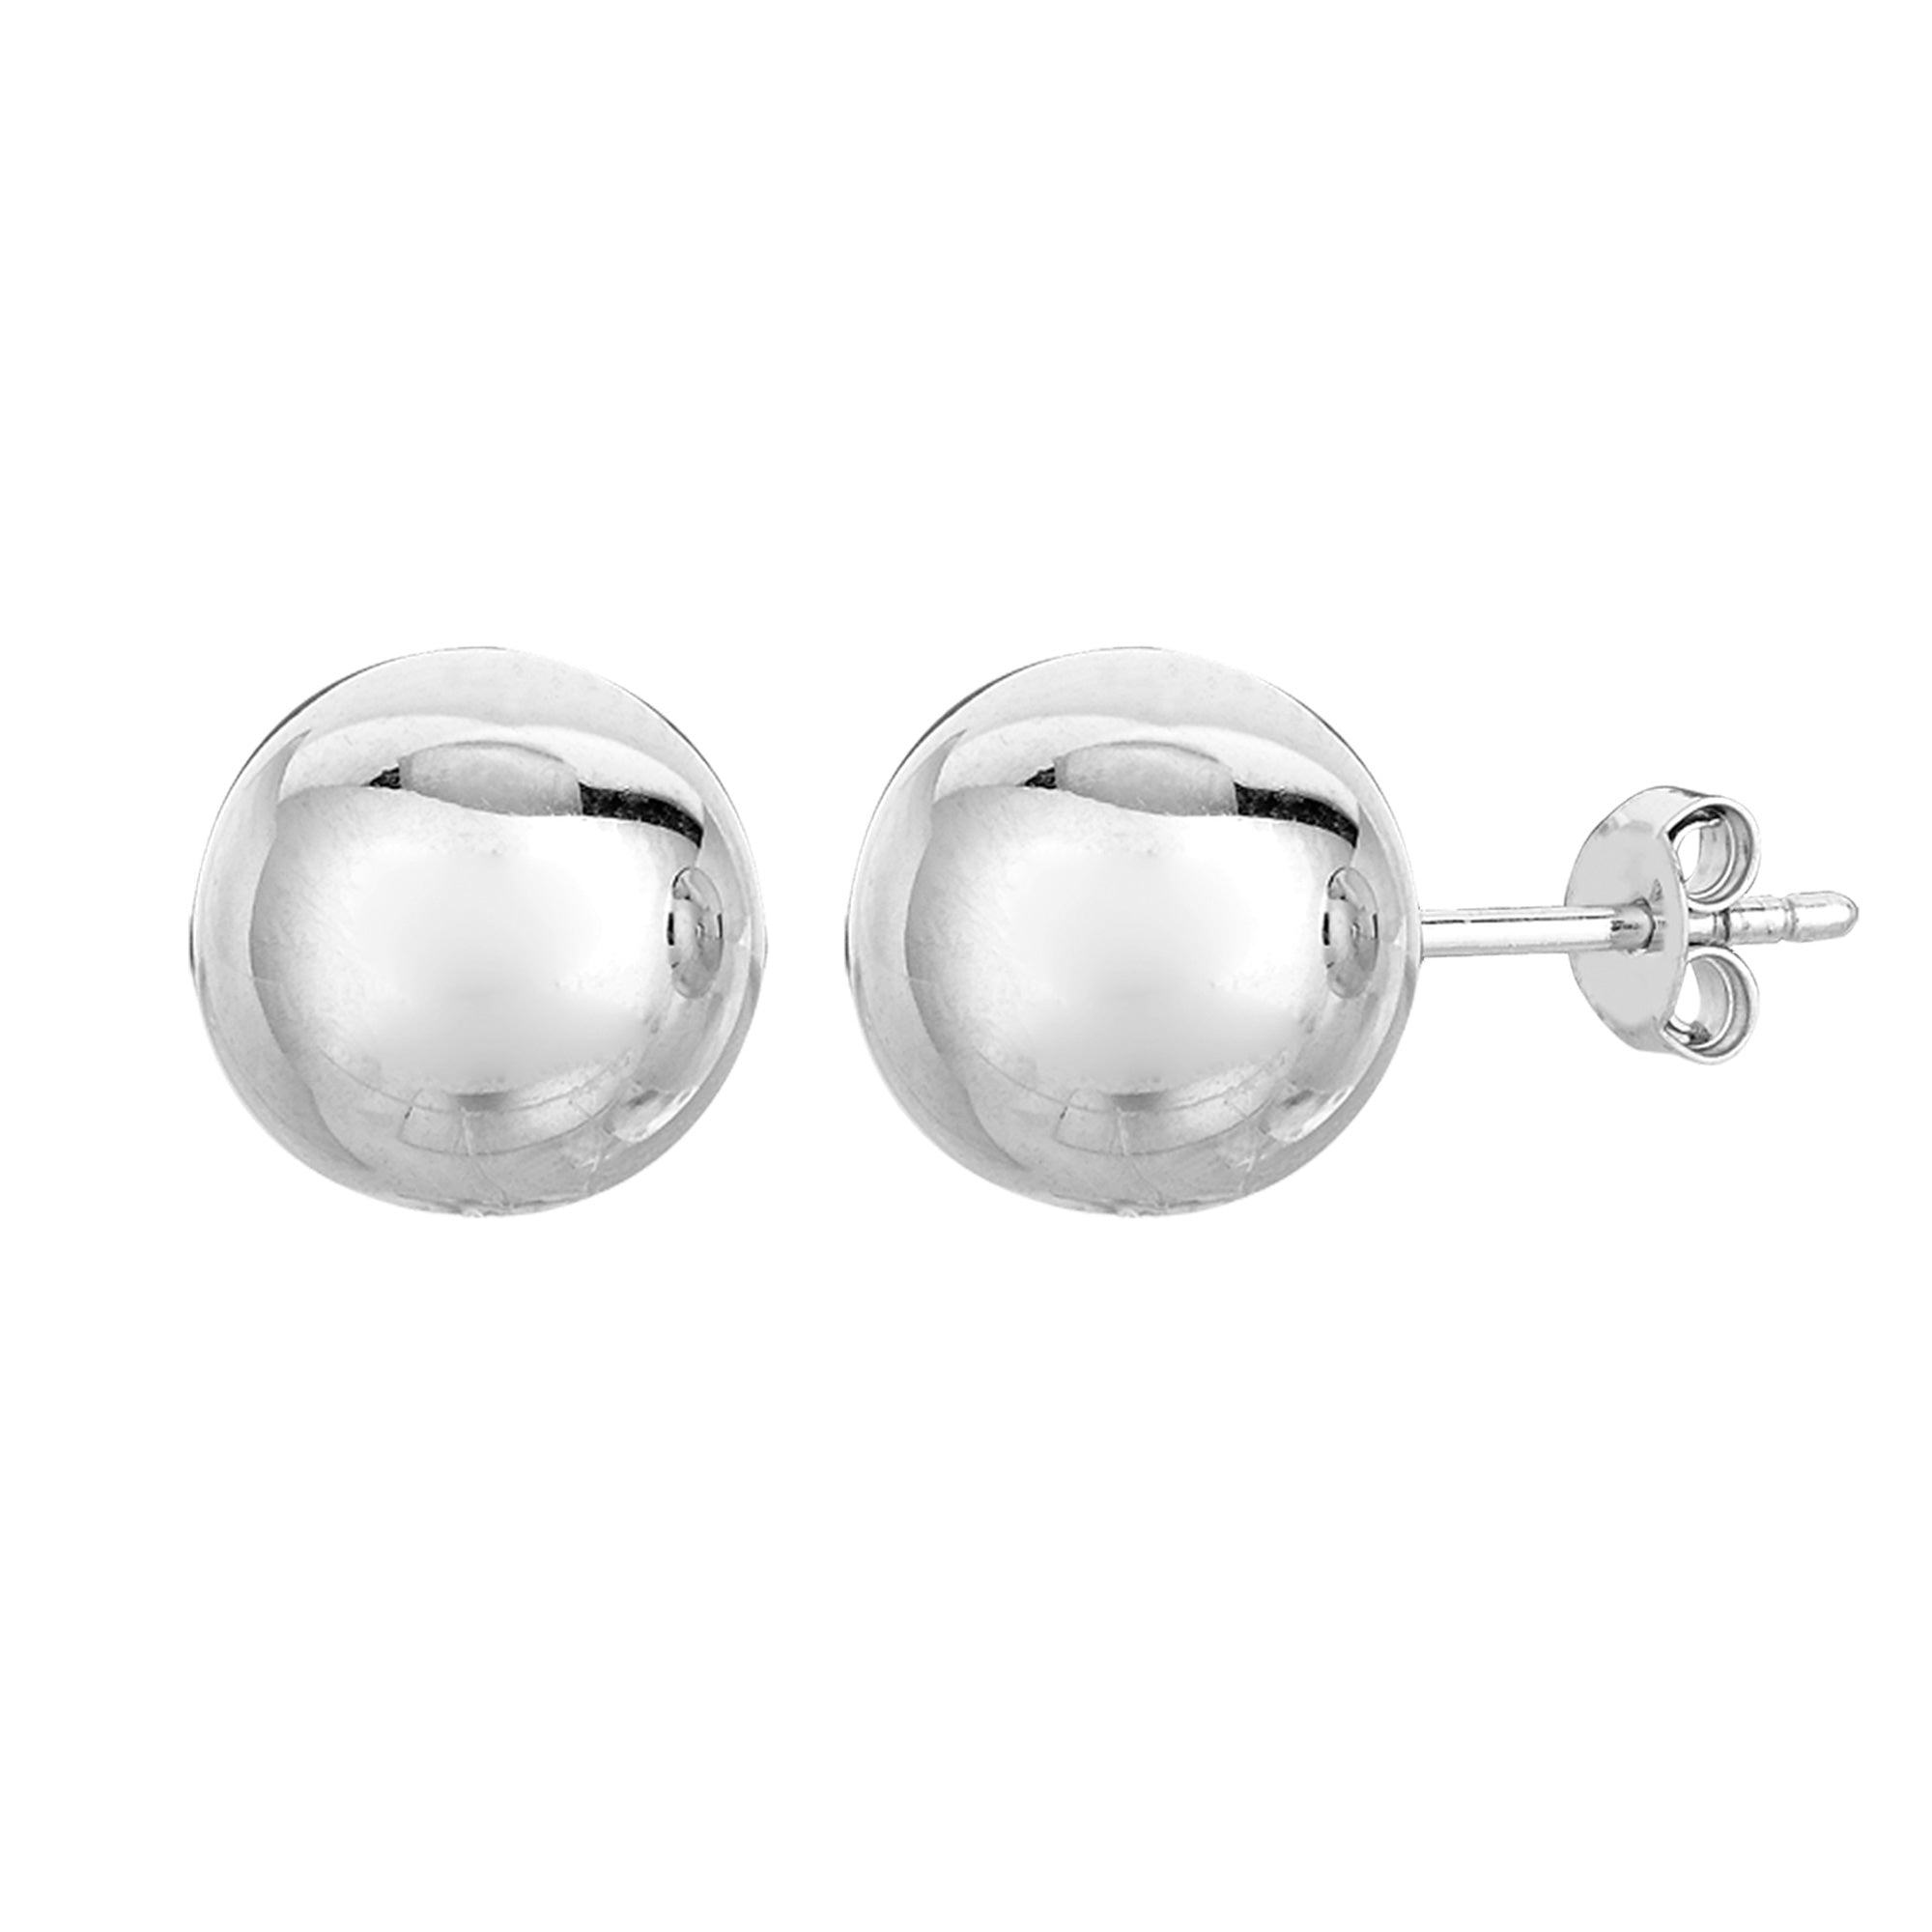 Pendientes de plata de ley con forma de bola, joyería fina de diseño para hombres y mujeres.